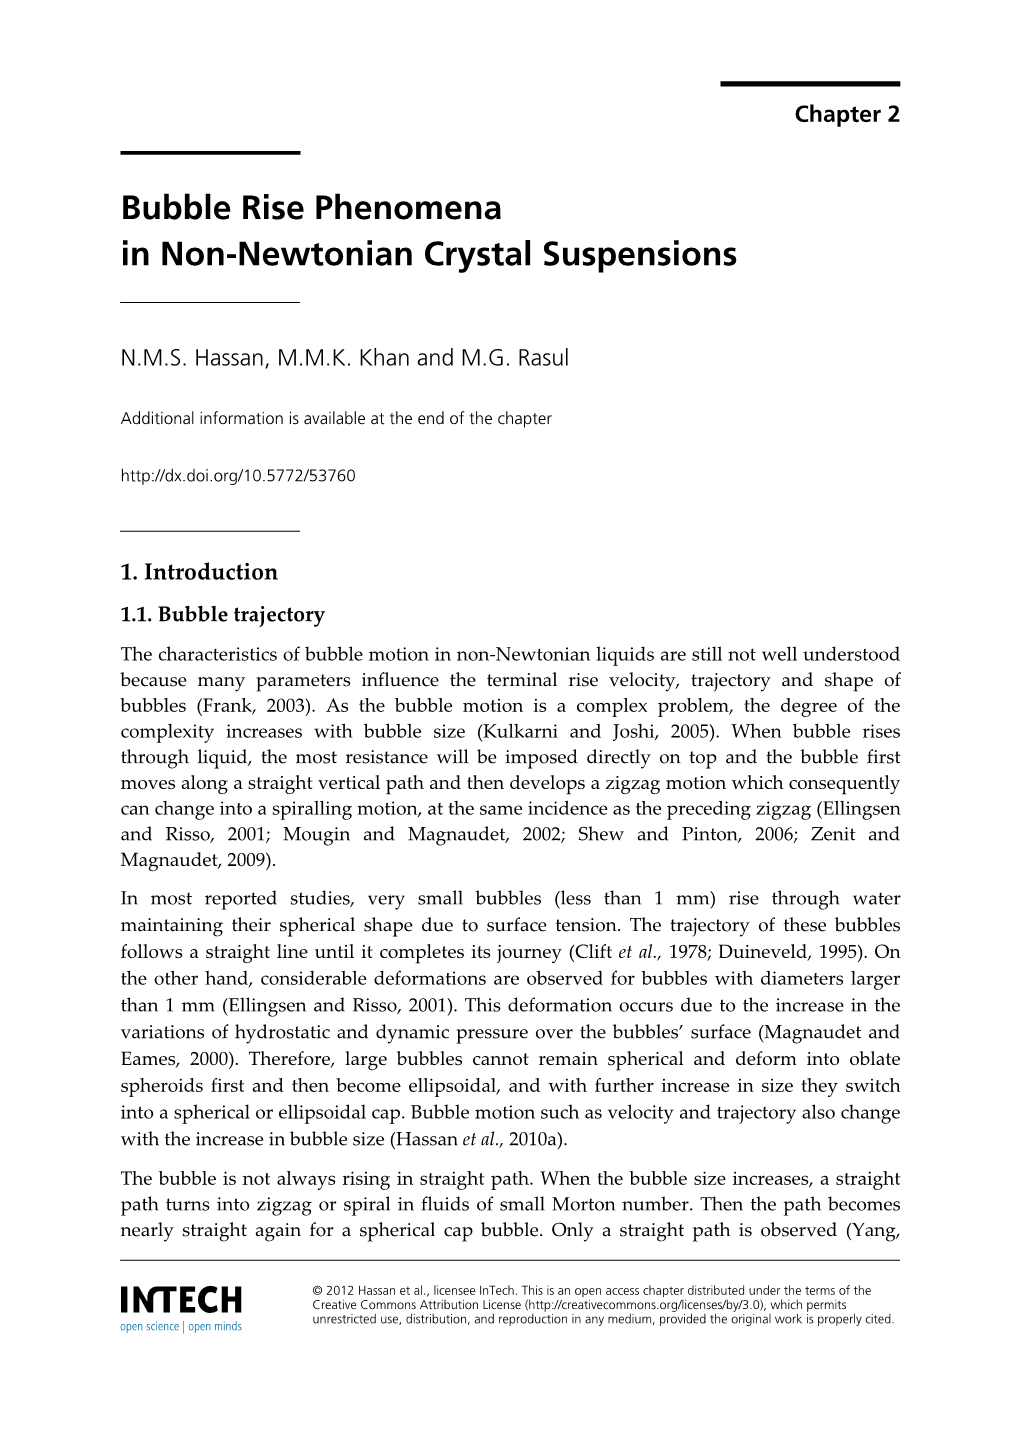 Bubble Rise Phenomena in Non-Newtonian Crystal Suspensions